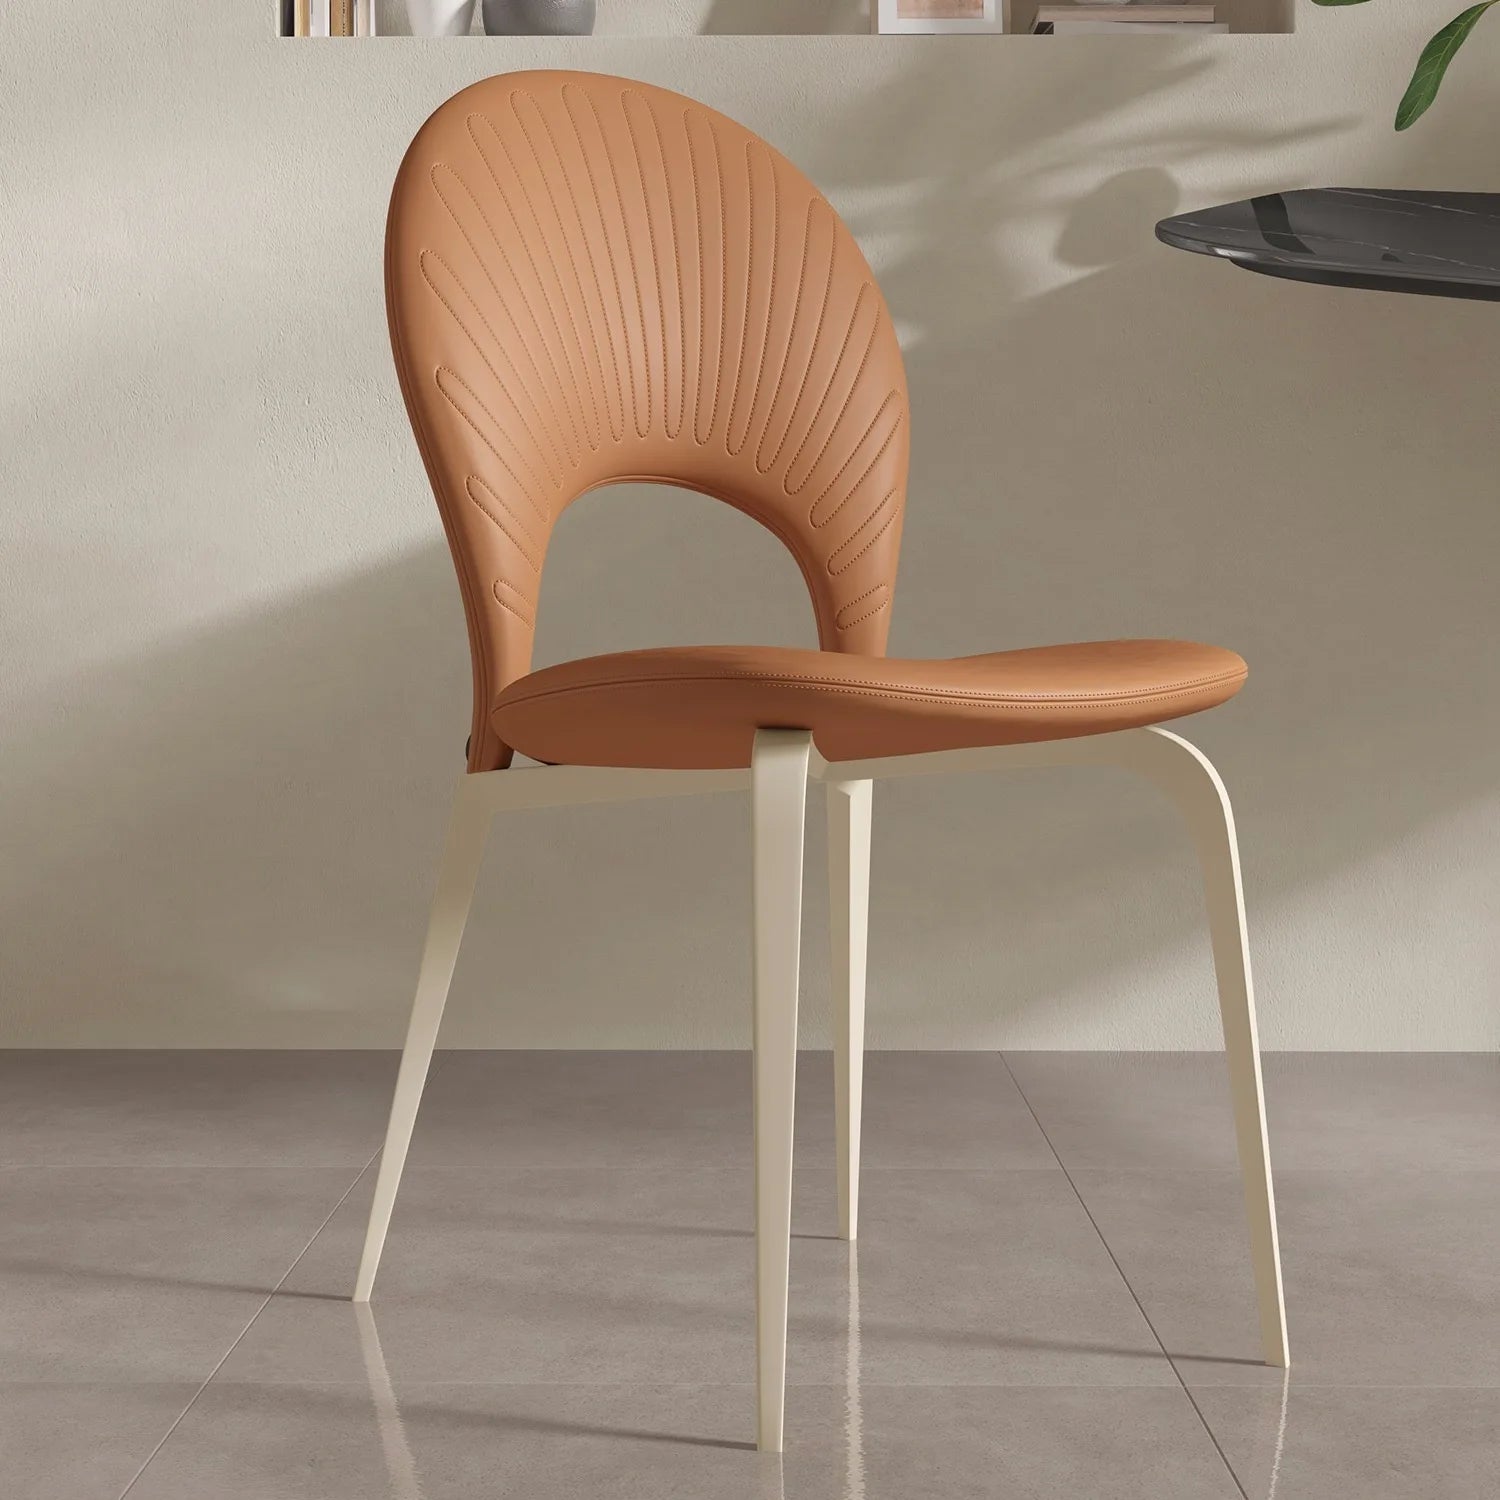 Estetikkunst Luksusstol - 1 Luxury Aesthetic Nordic Dining Chair